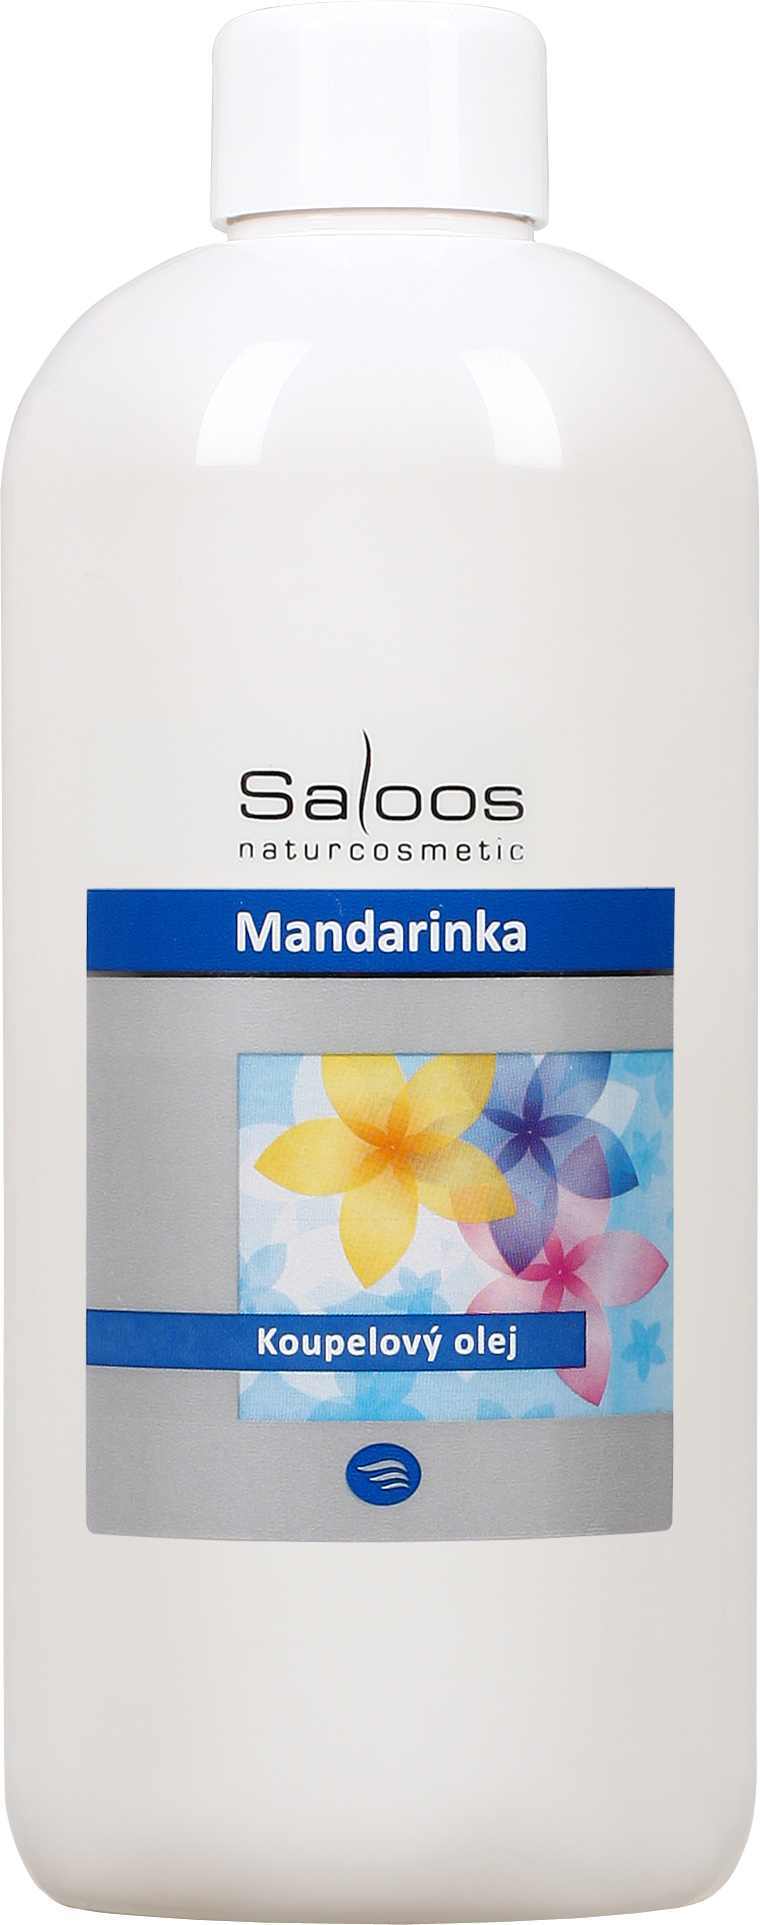 Saloos Mandarinka - koupelový olej Balení: 500 ml